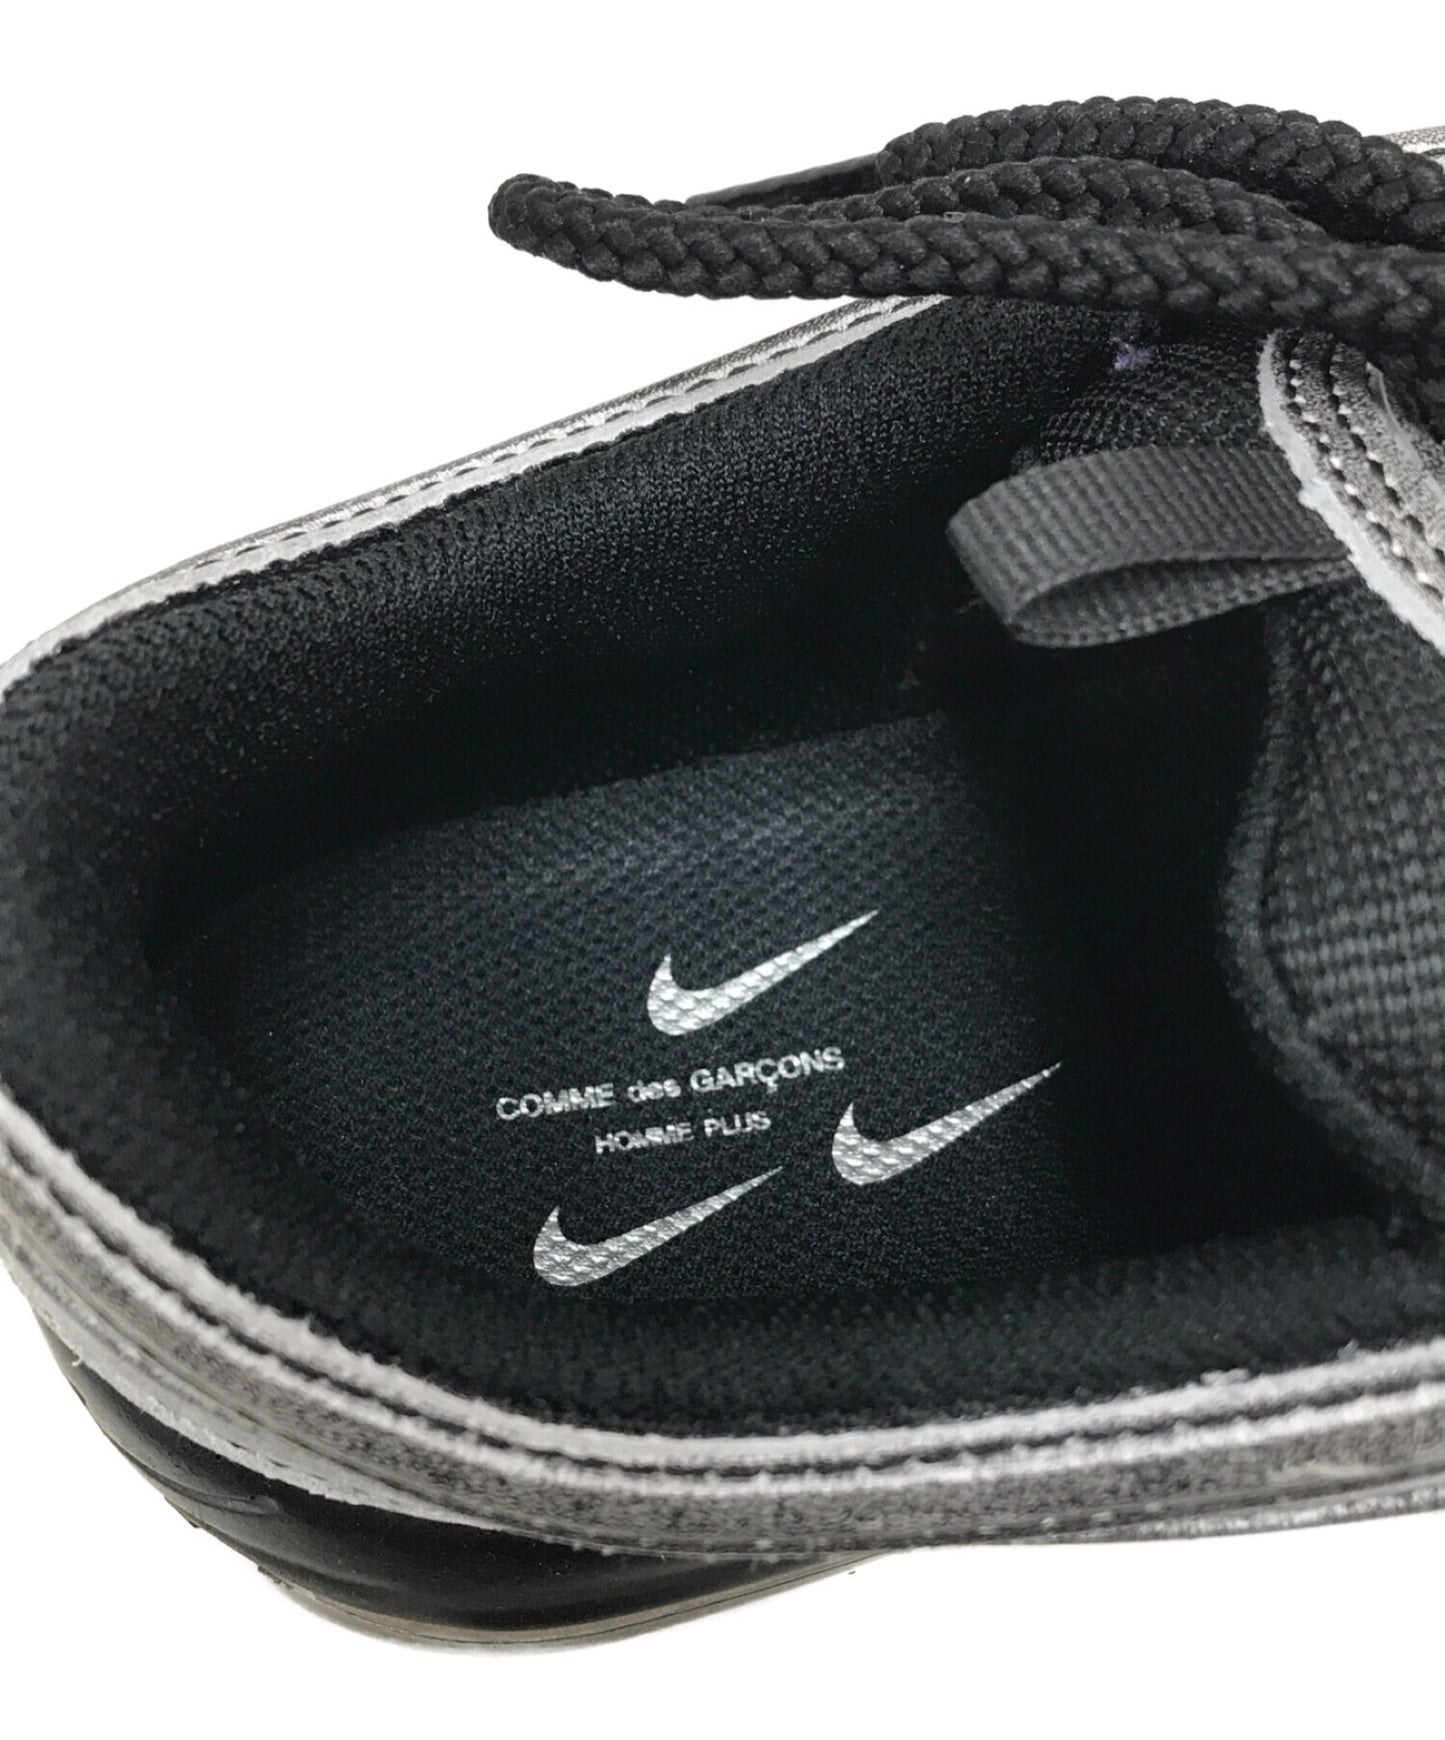 Nike×Comme des Garcons Homme Plus Air Max 97 DX6932-002